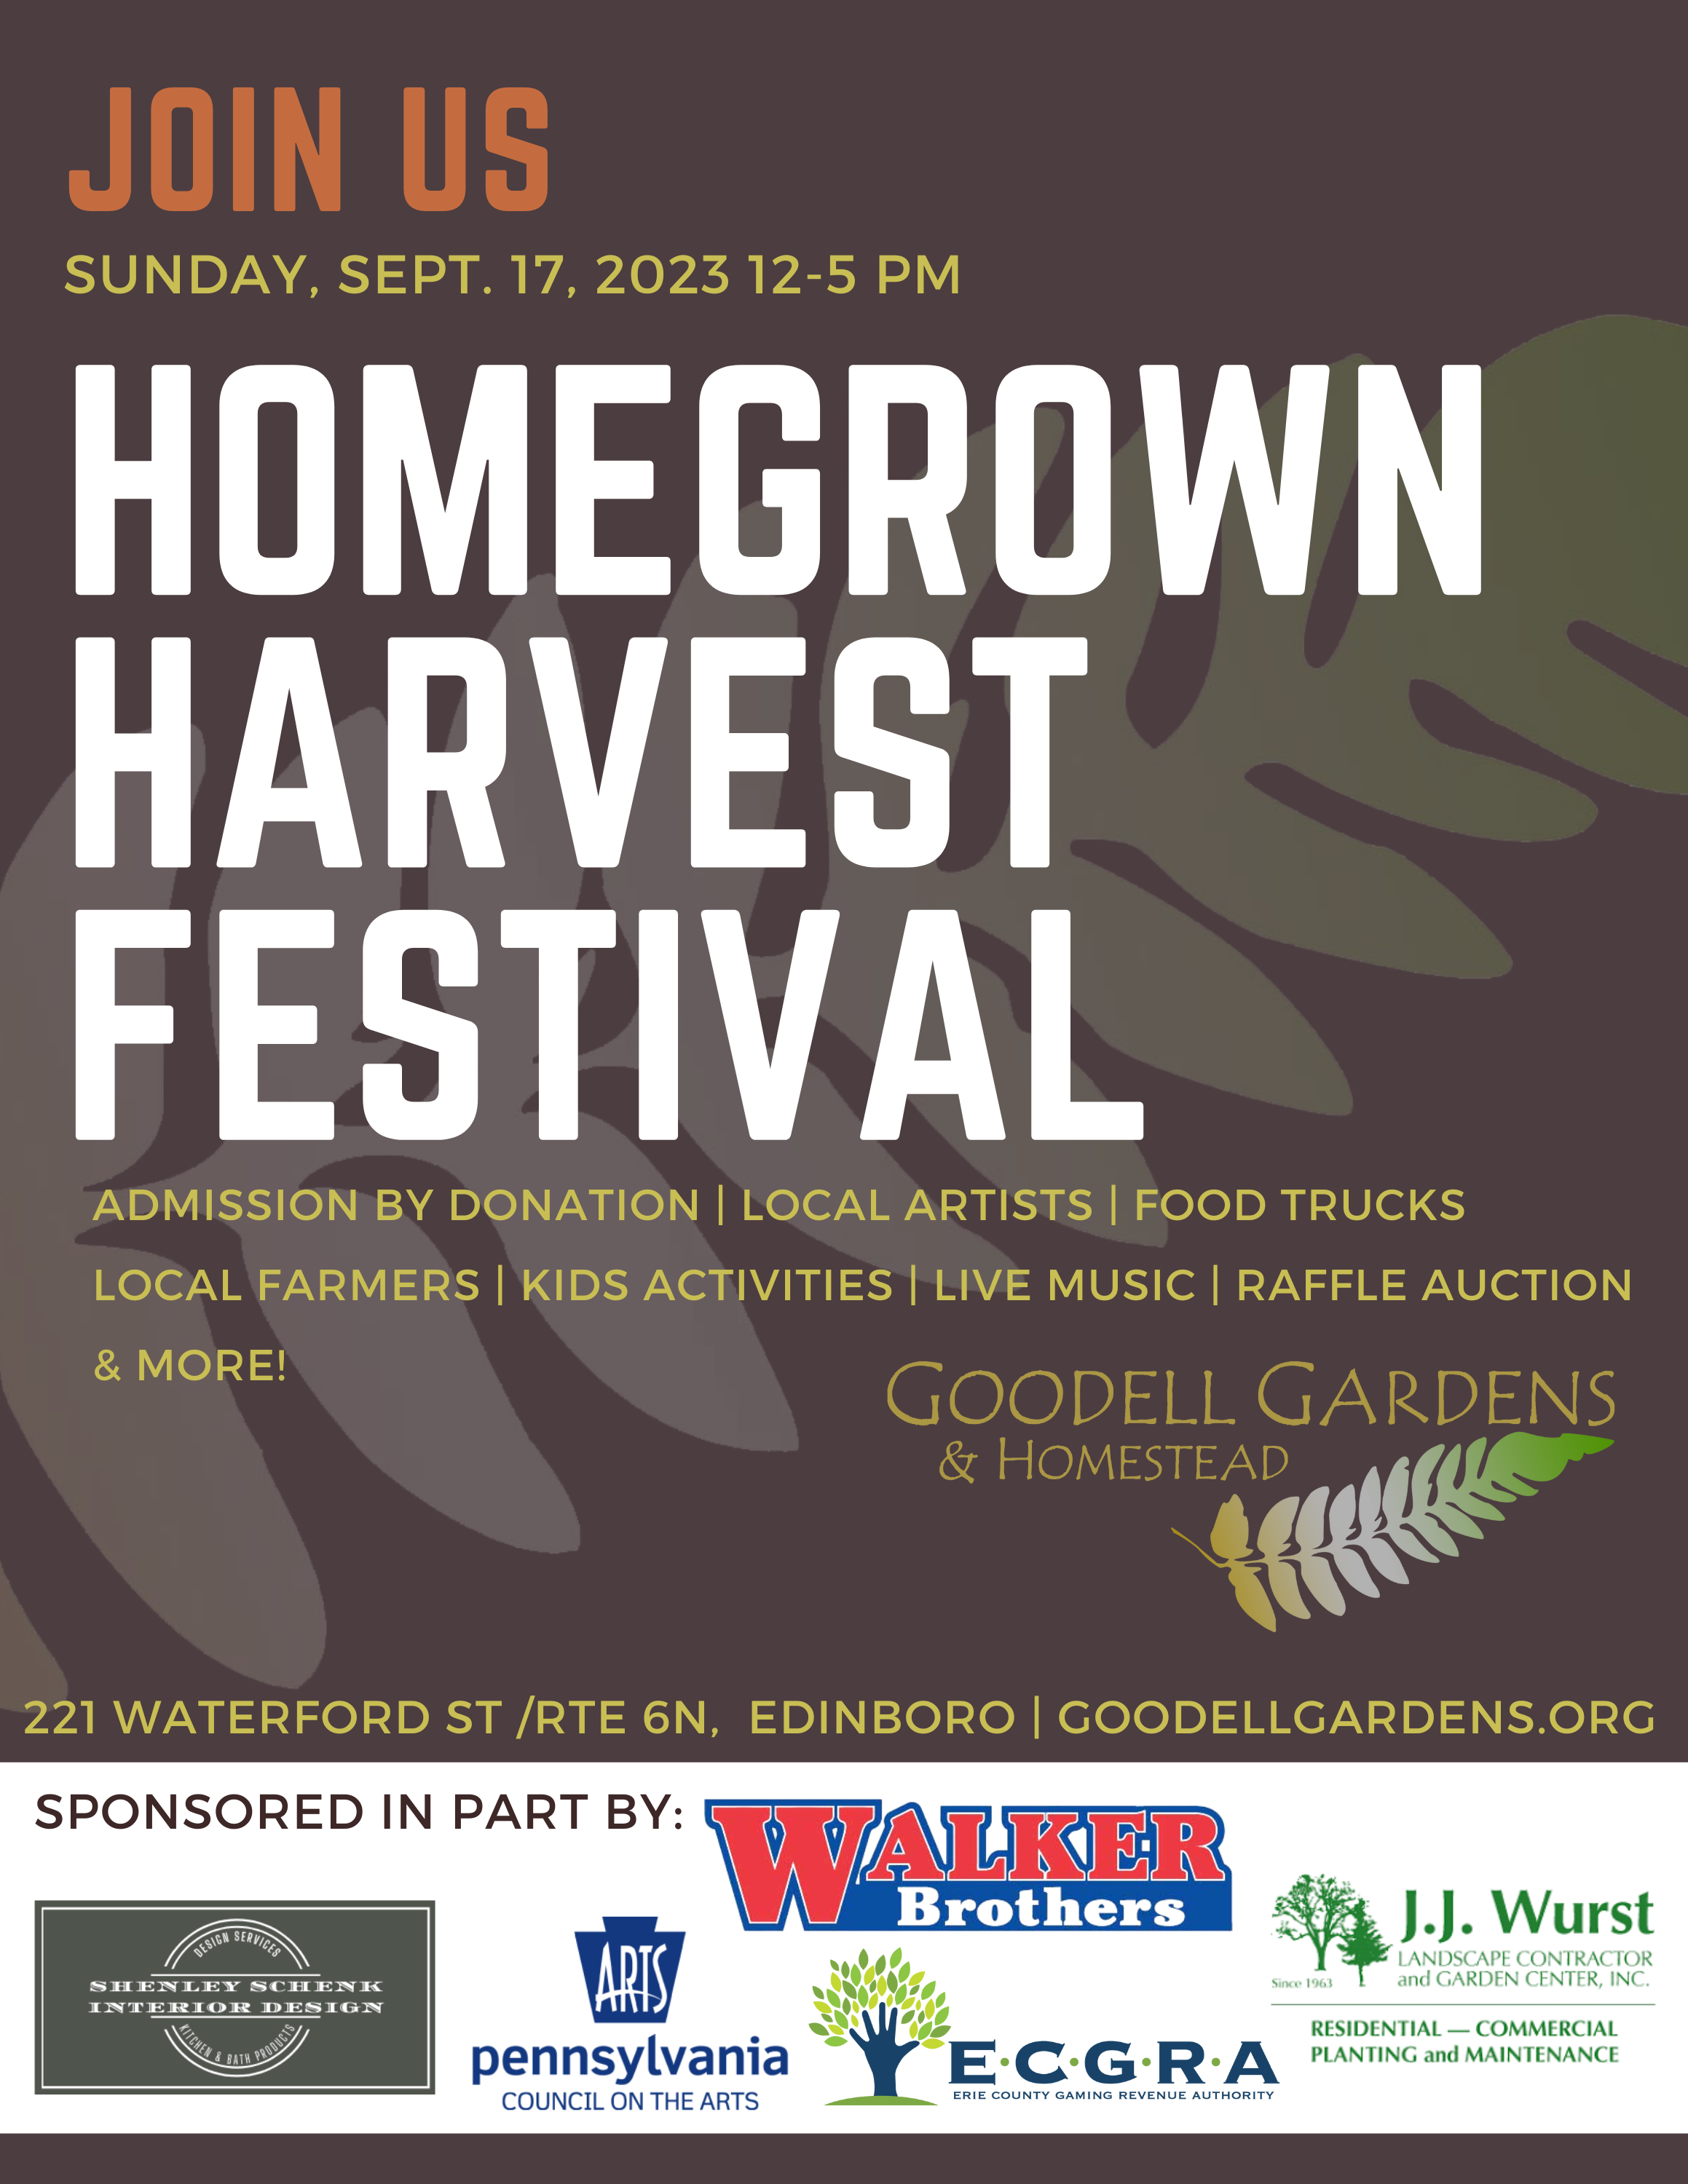 RETURN OF THE FEST — Homegrown Harvest Festival Returns Sunday, Sept. 12 –  Goodell Gardens & Homestead